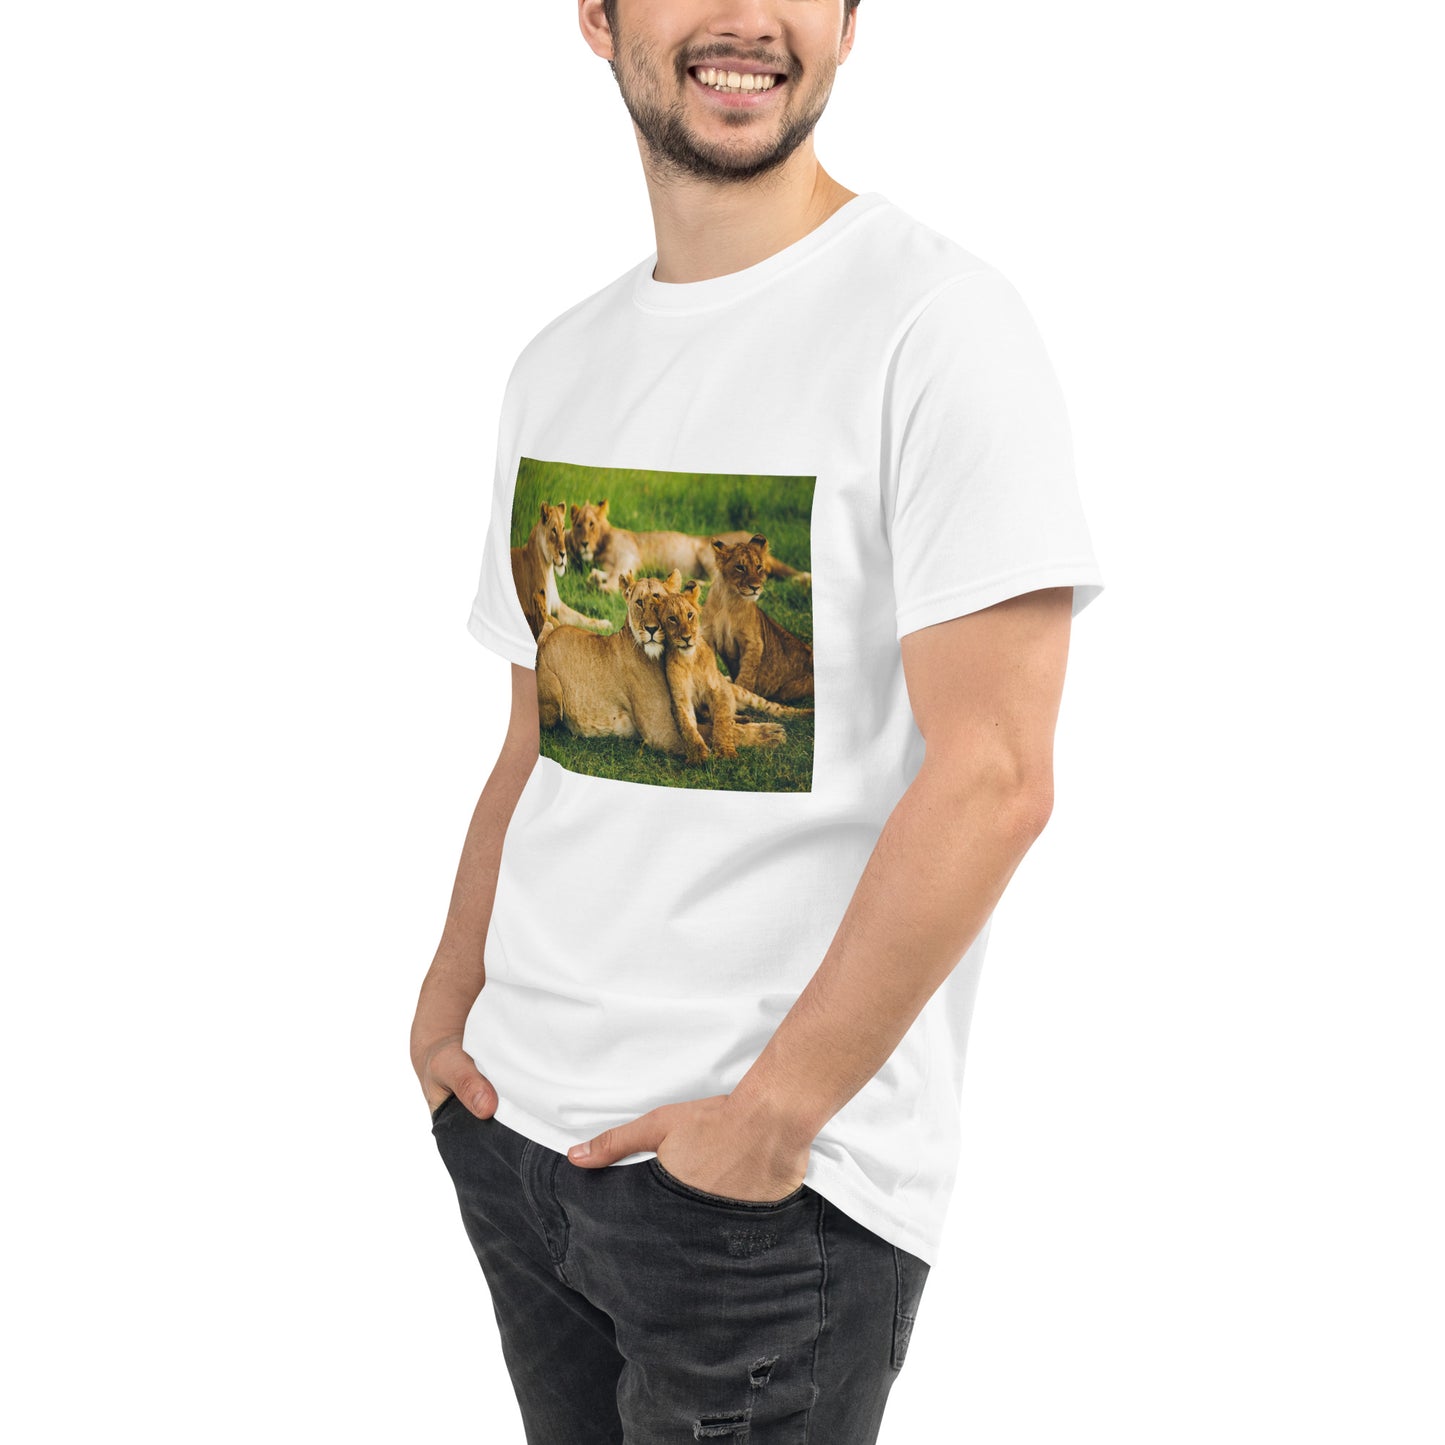 Nature's Pride : T-shirt bio à imprimé Lion Family - Embrassez la nature avec style !